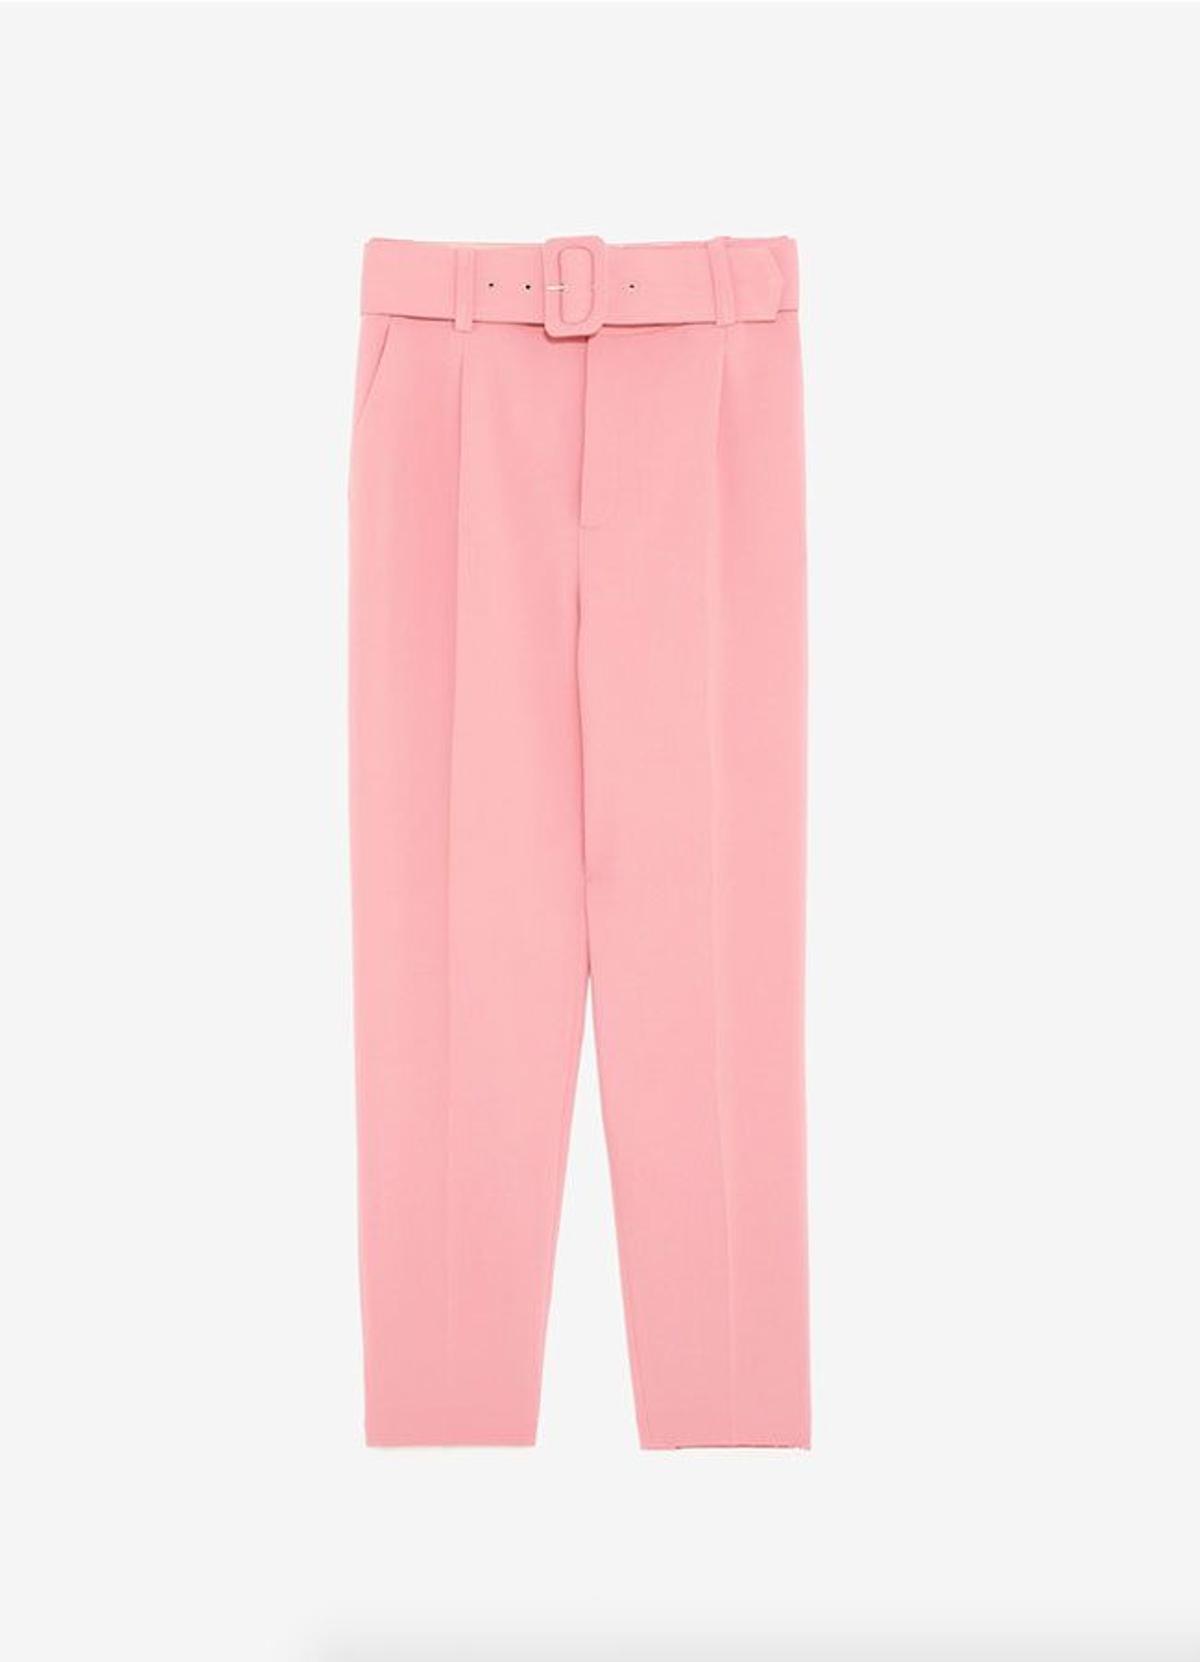 Trajes de chaqueta rosas: pantalón rosa con cinturón